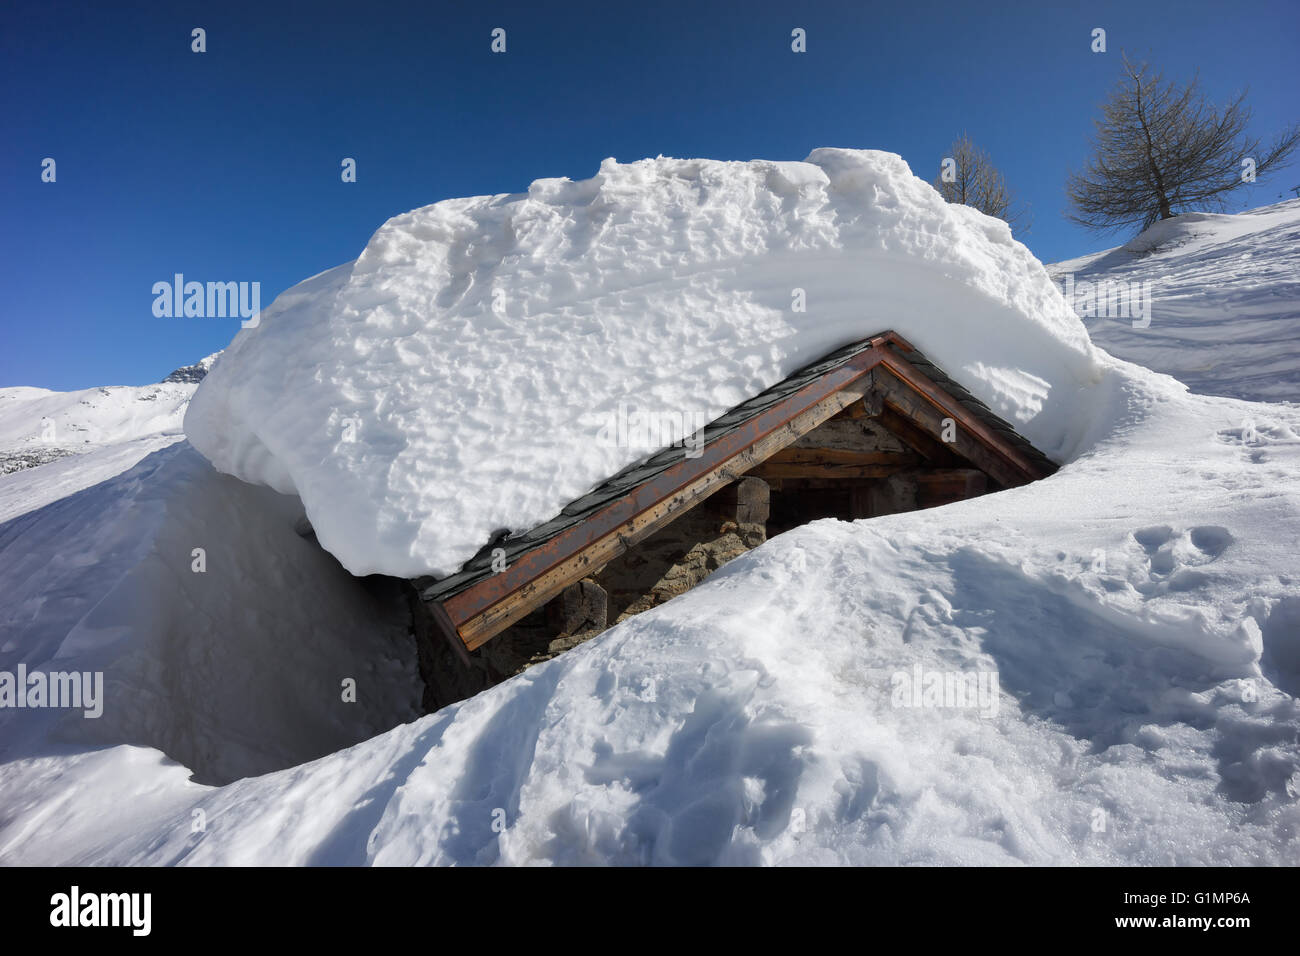 Maison de montagne couverte de neige et isolés. Chiesa in Valmalenco, Sondrio, Italie Banque D'Images